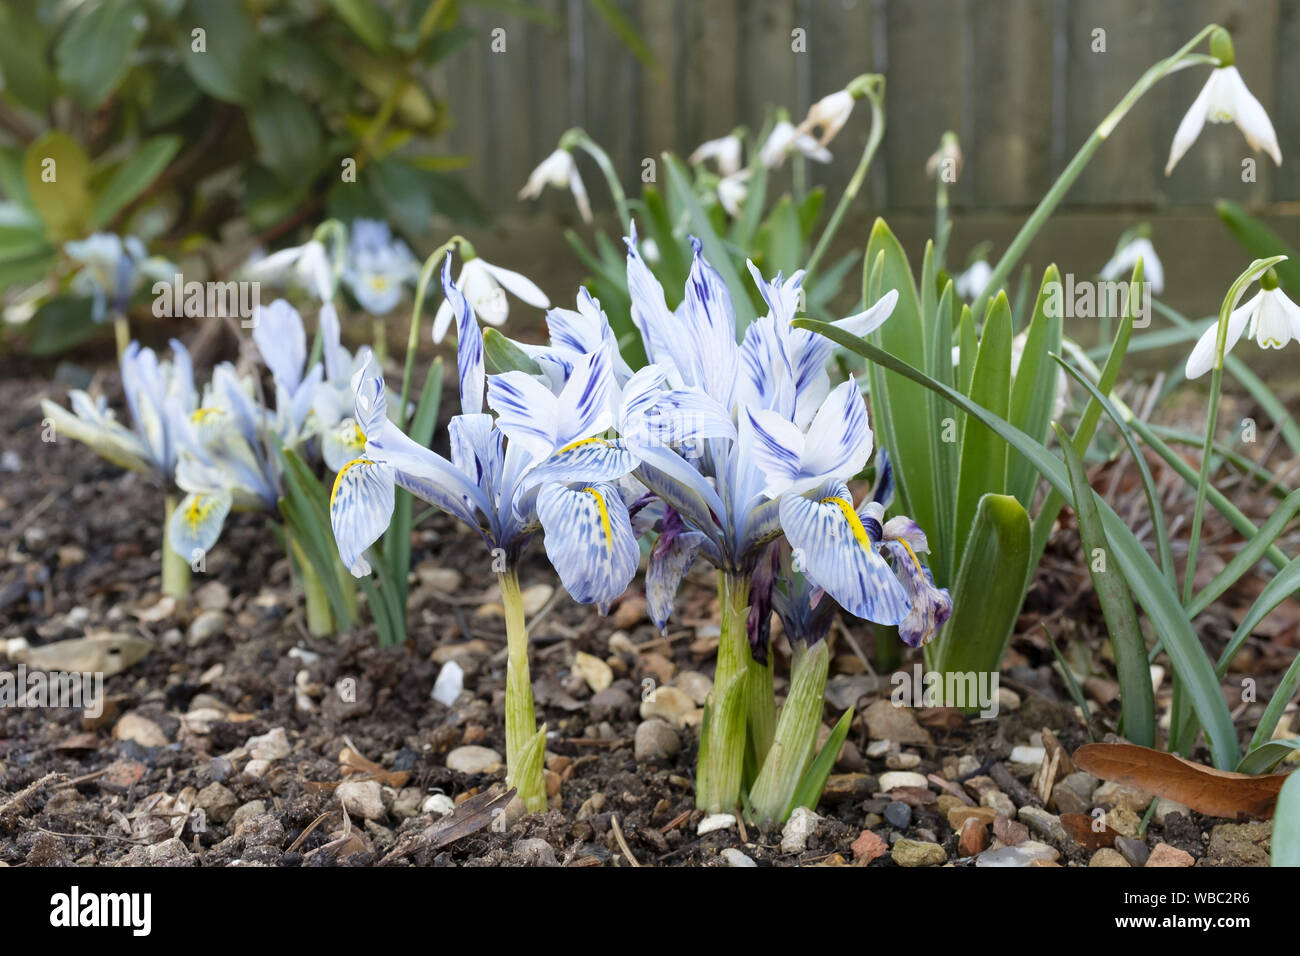 Iris fleurs naines (Katharine Hodgkin) croissant dans un jardin parterre, UK Banque D'Images